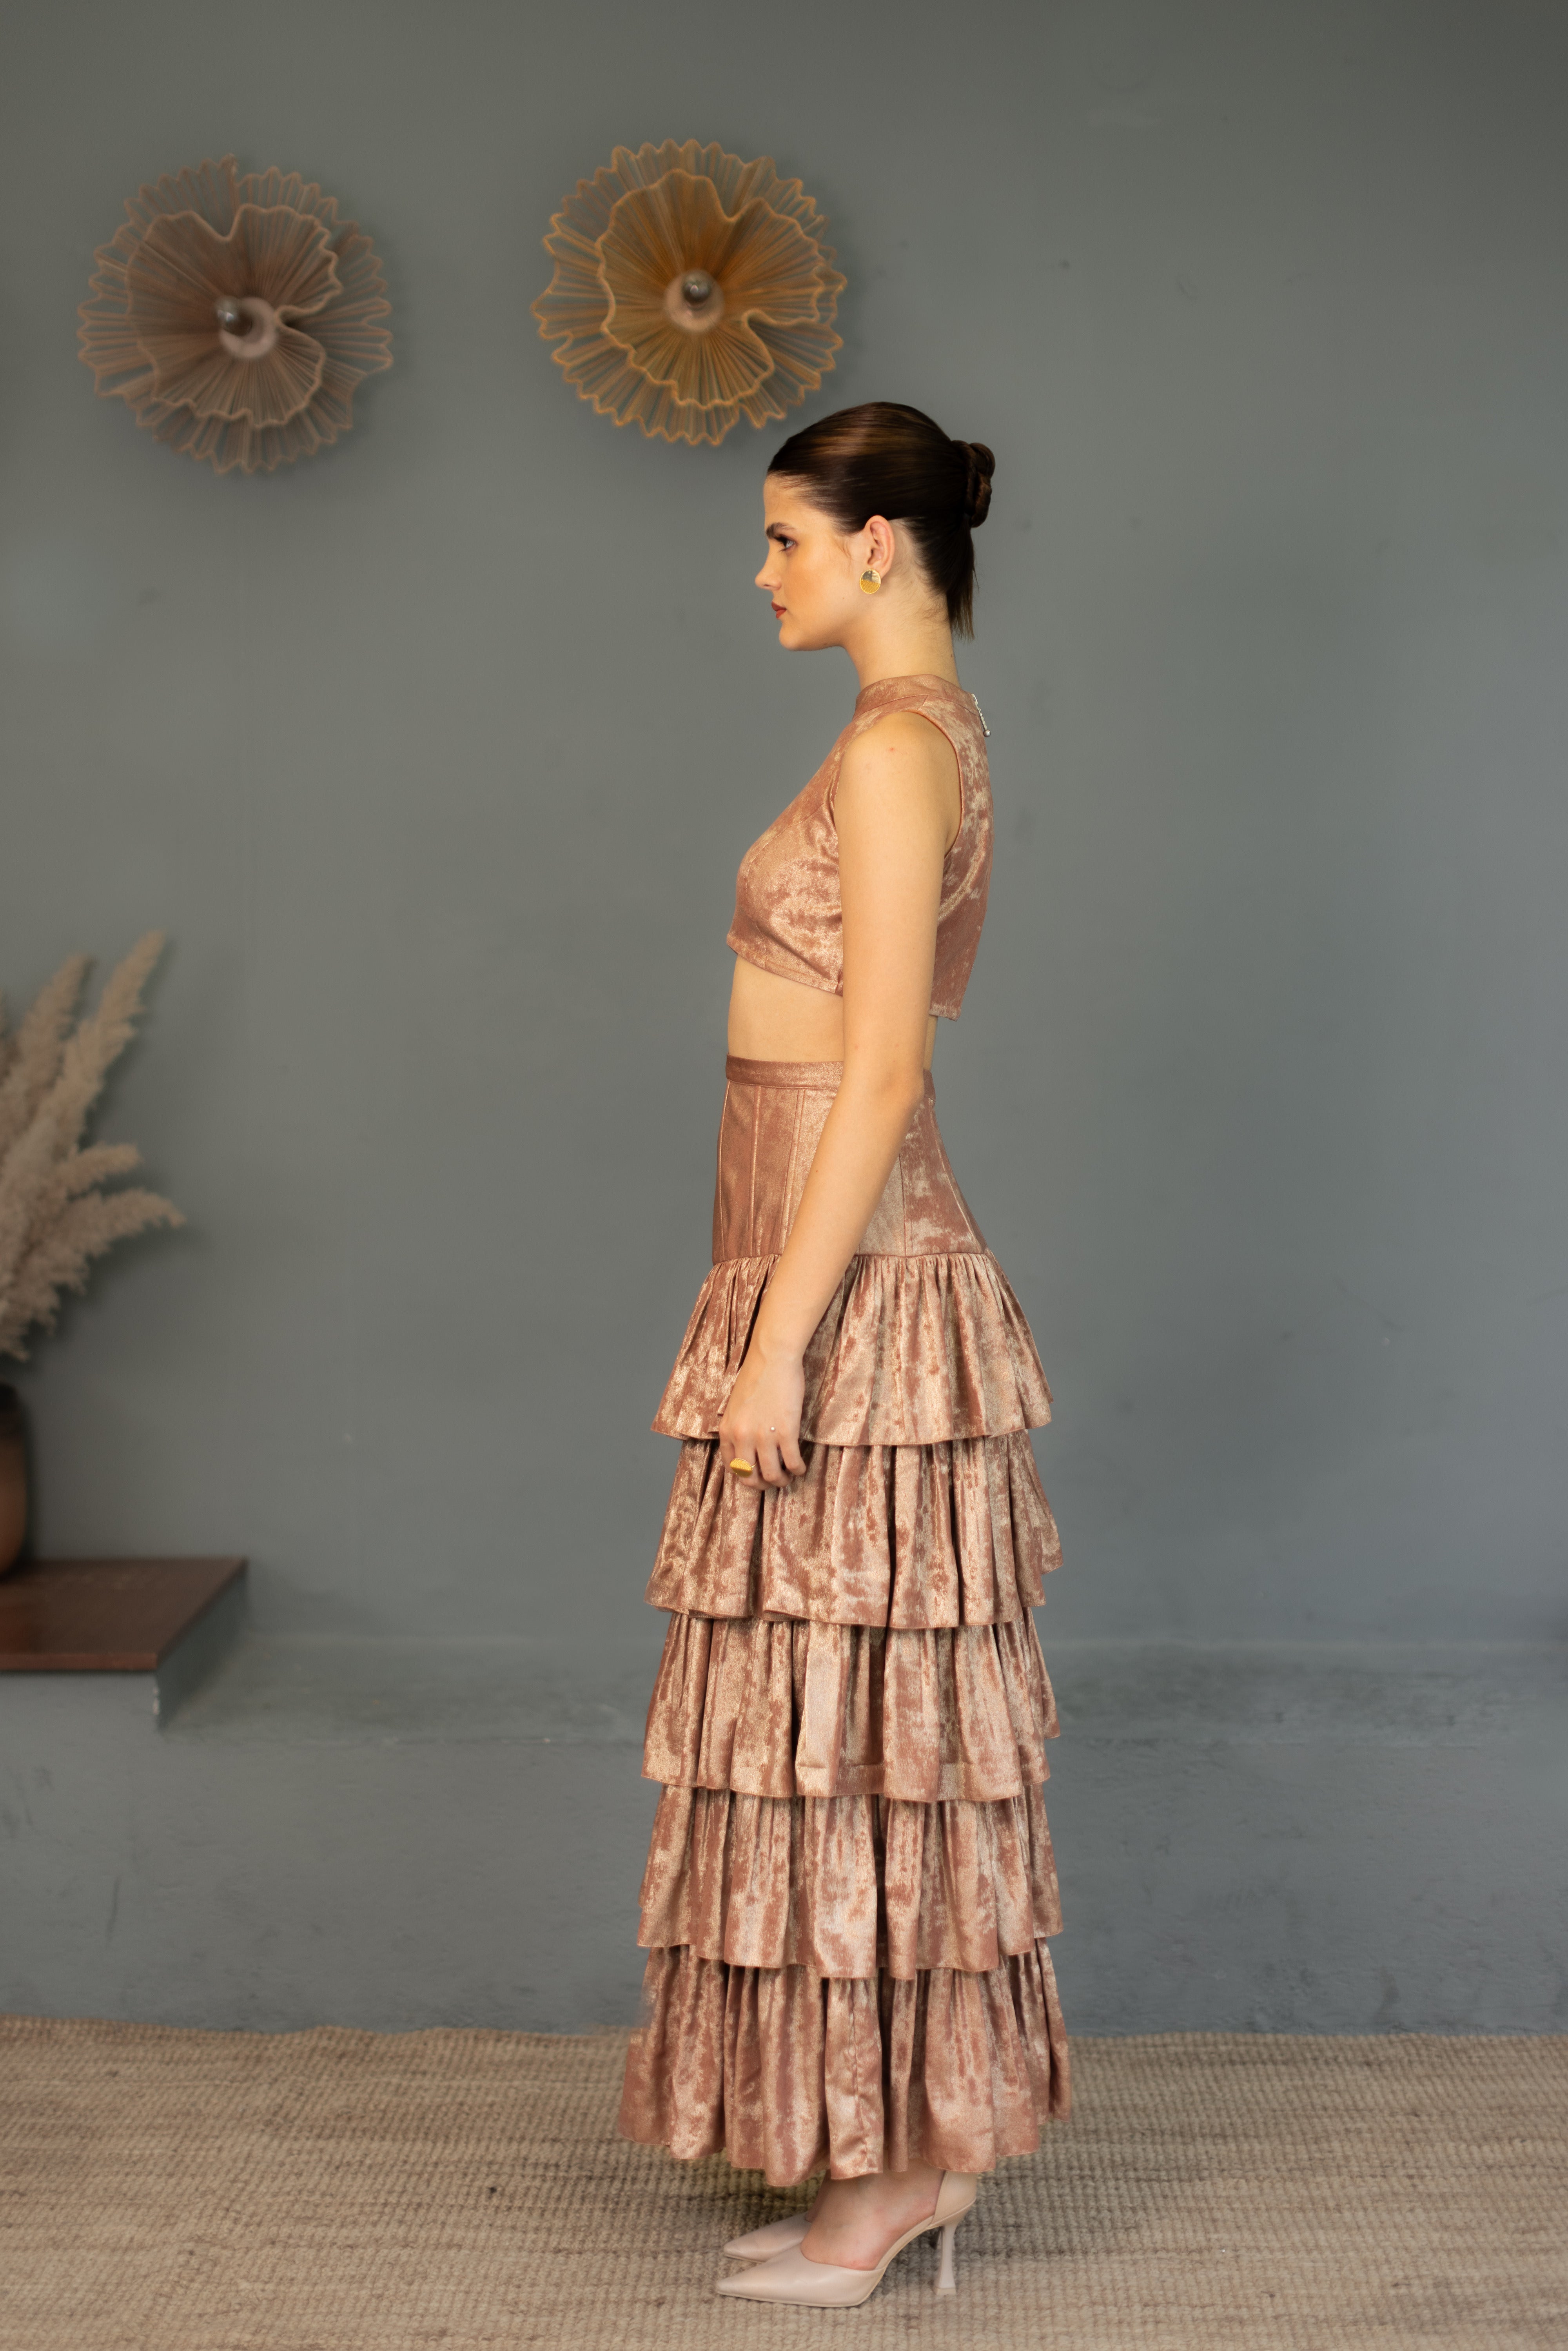 Leia Corset Skirt and Top set - Rose Gold